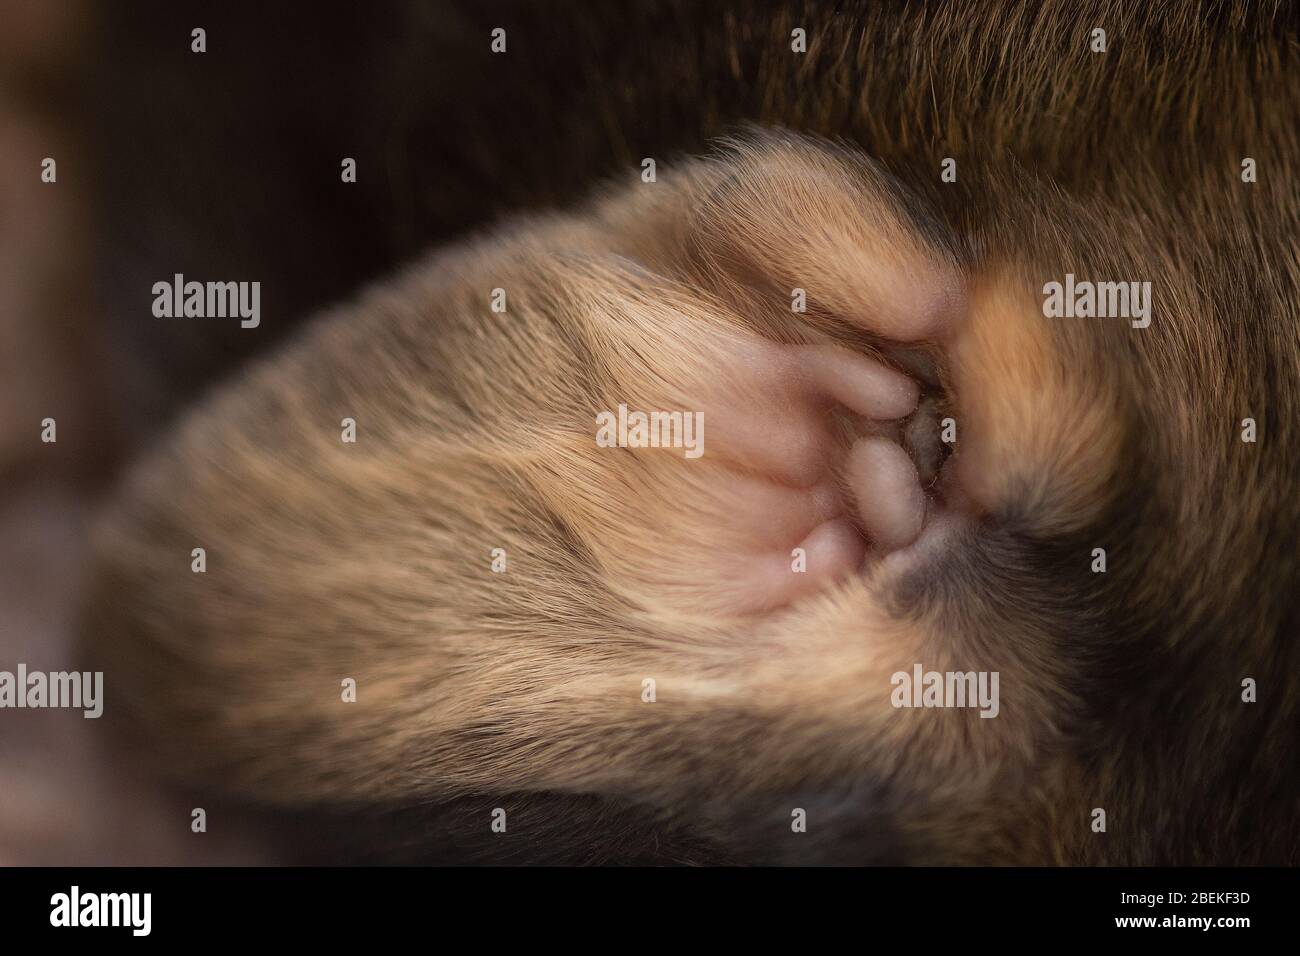 desarrollo de orejas de cachorro de una semana de edad Foto de stock